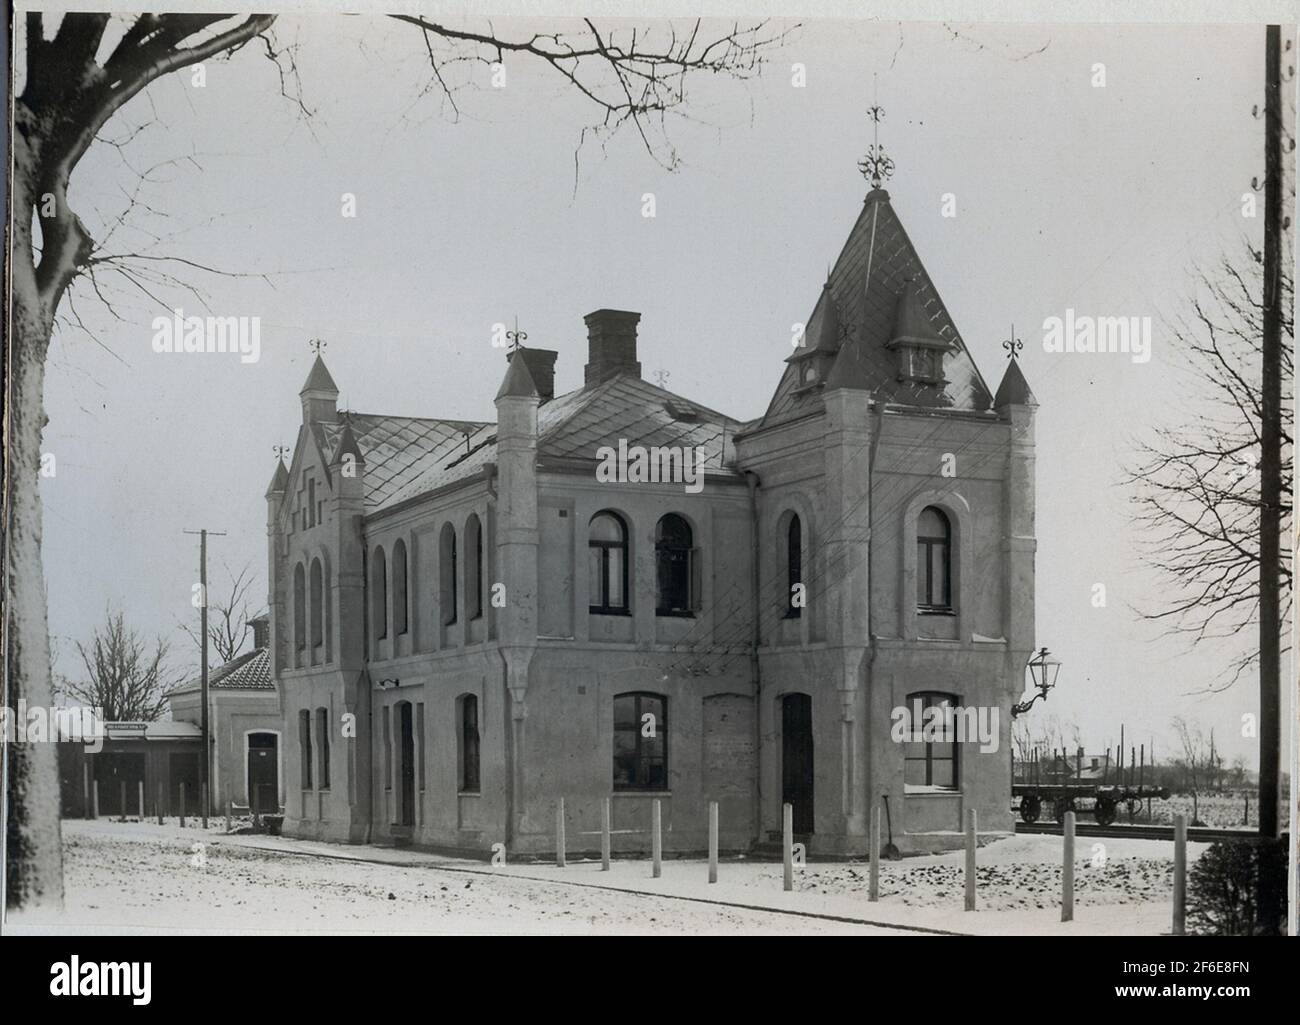 Stationhouse in Harplinge. Stock Photo